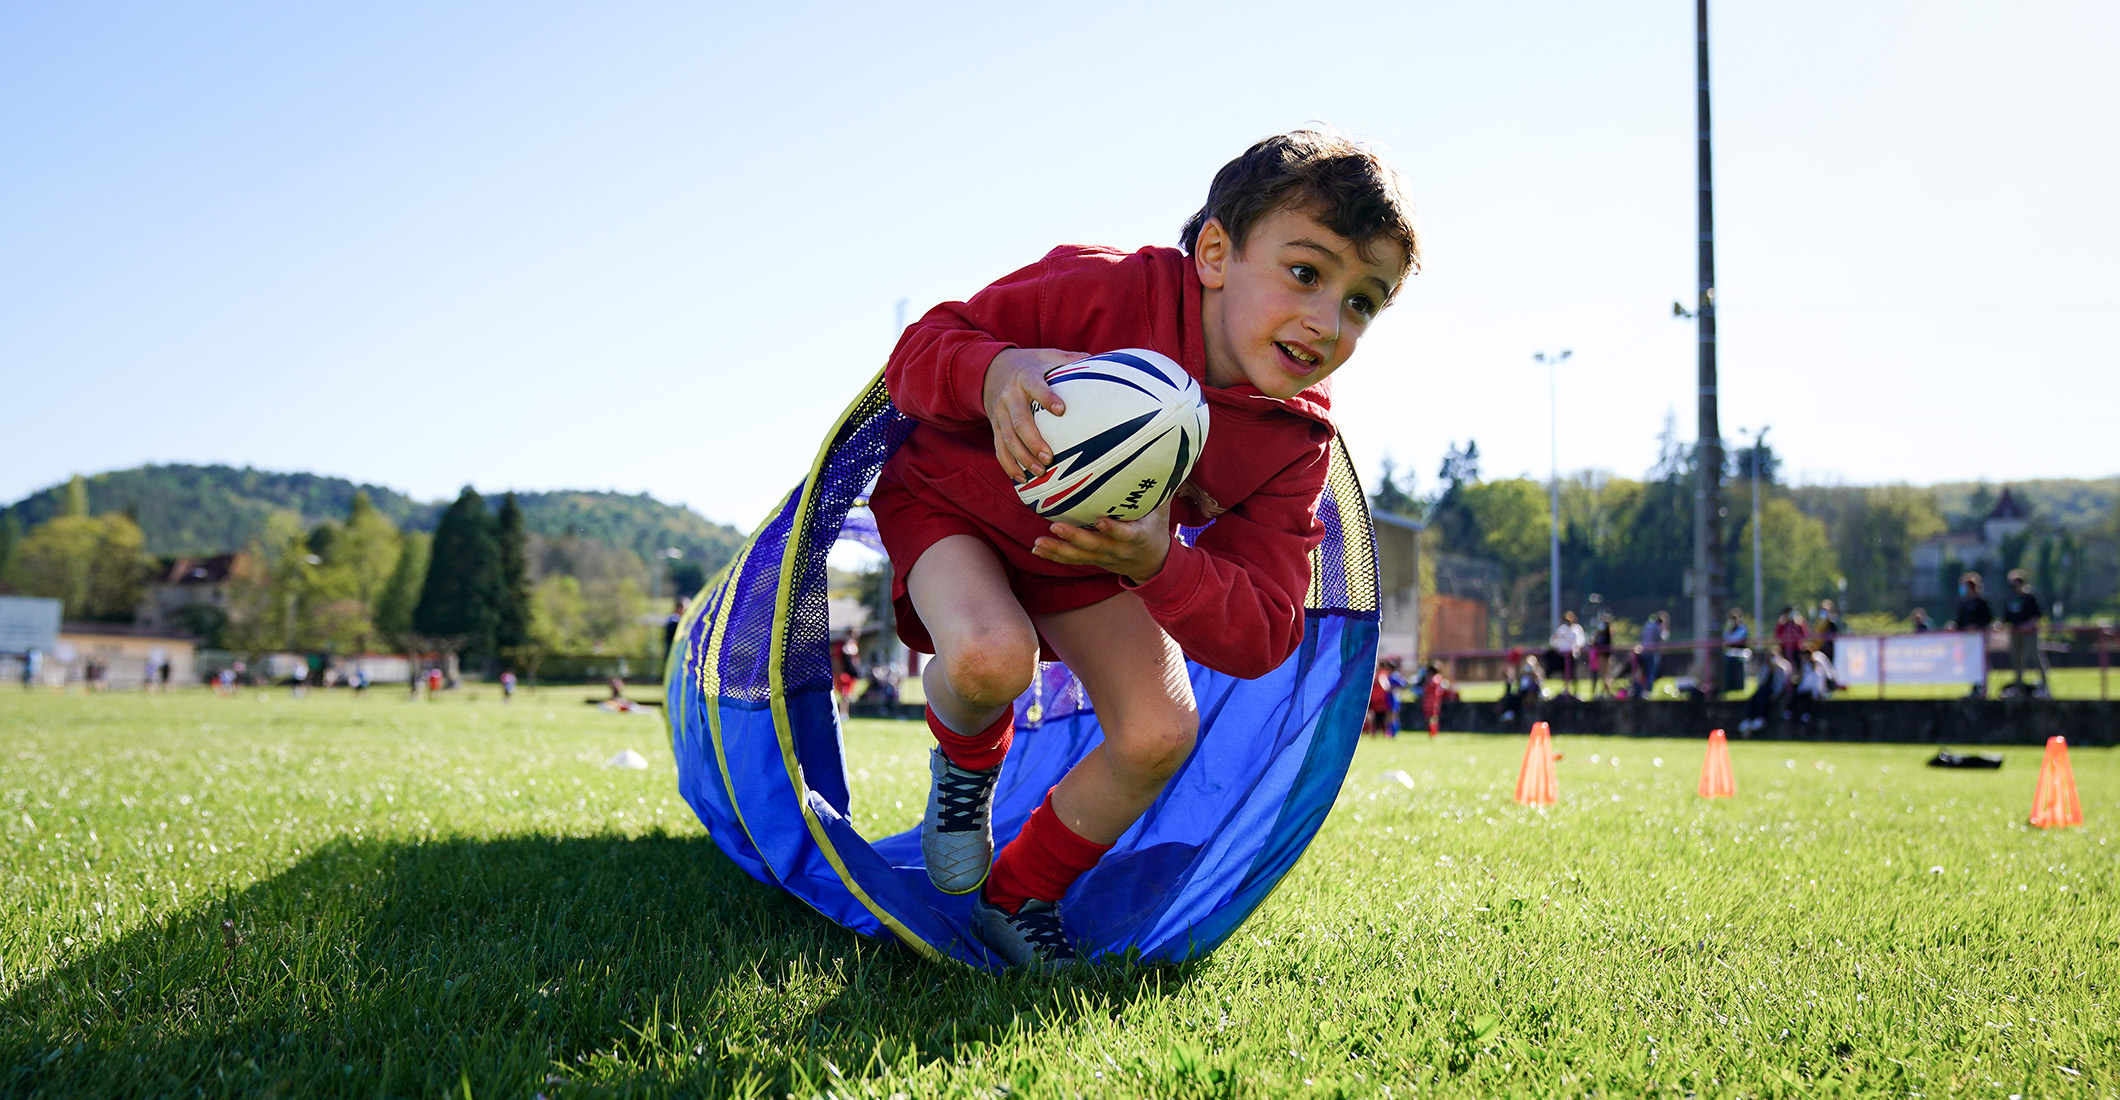 Baby Rugby : Une pratique encadrée